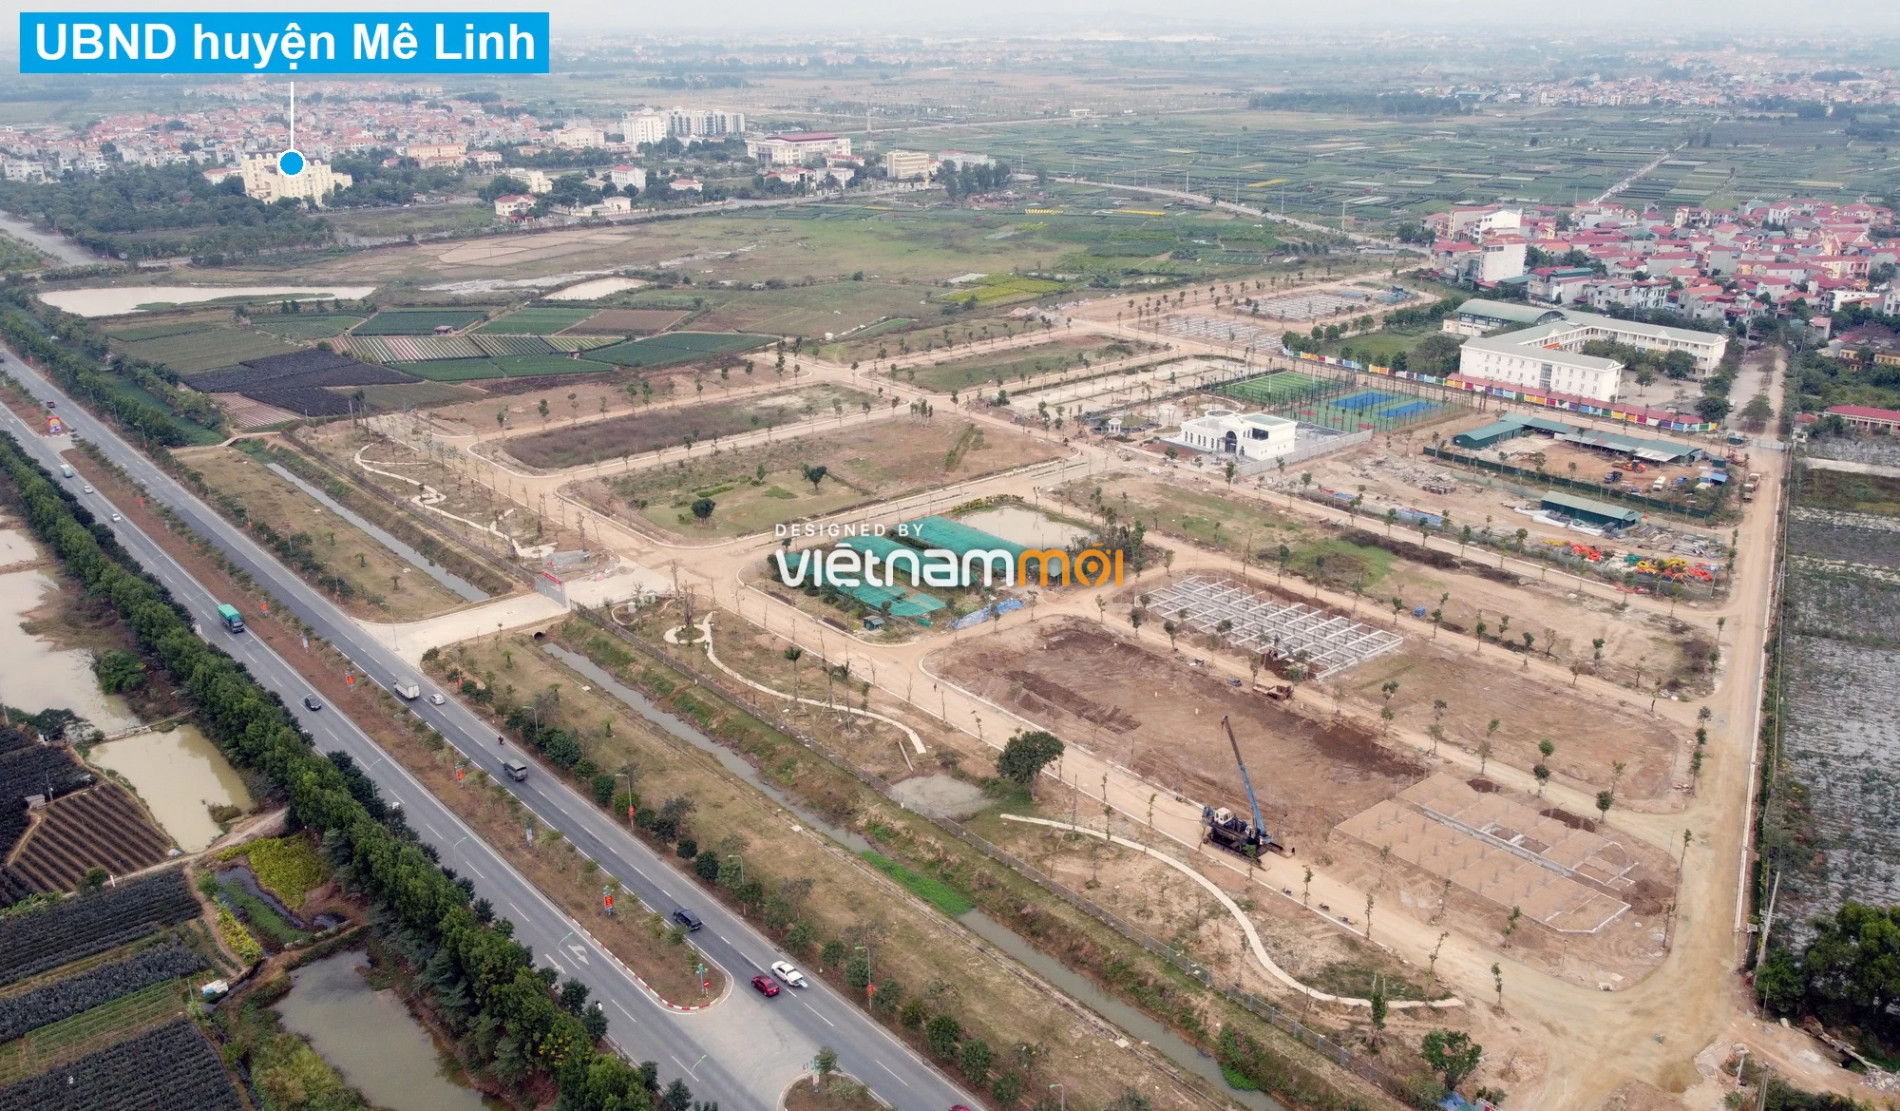 Toàn cảnh 6 dự án chậm triển khai ở huyện Mê Linh sắp tái triển khai - Ảnh 13.